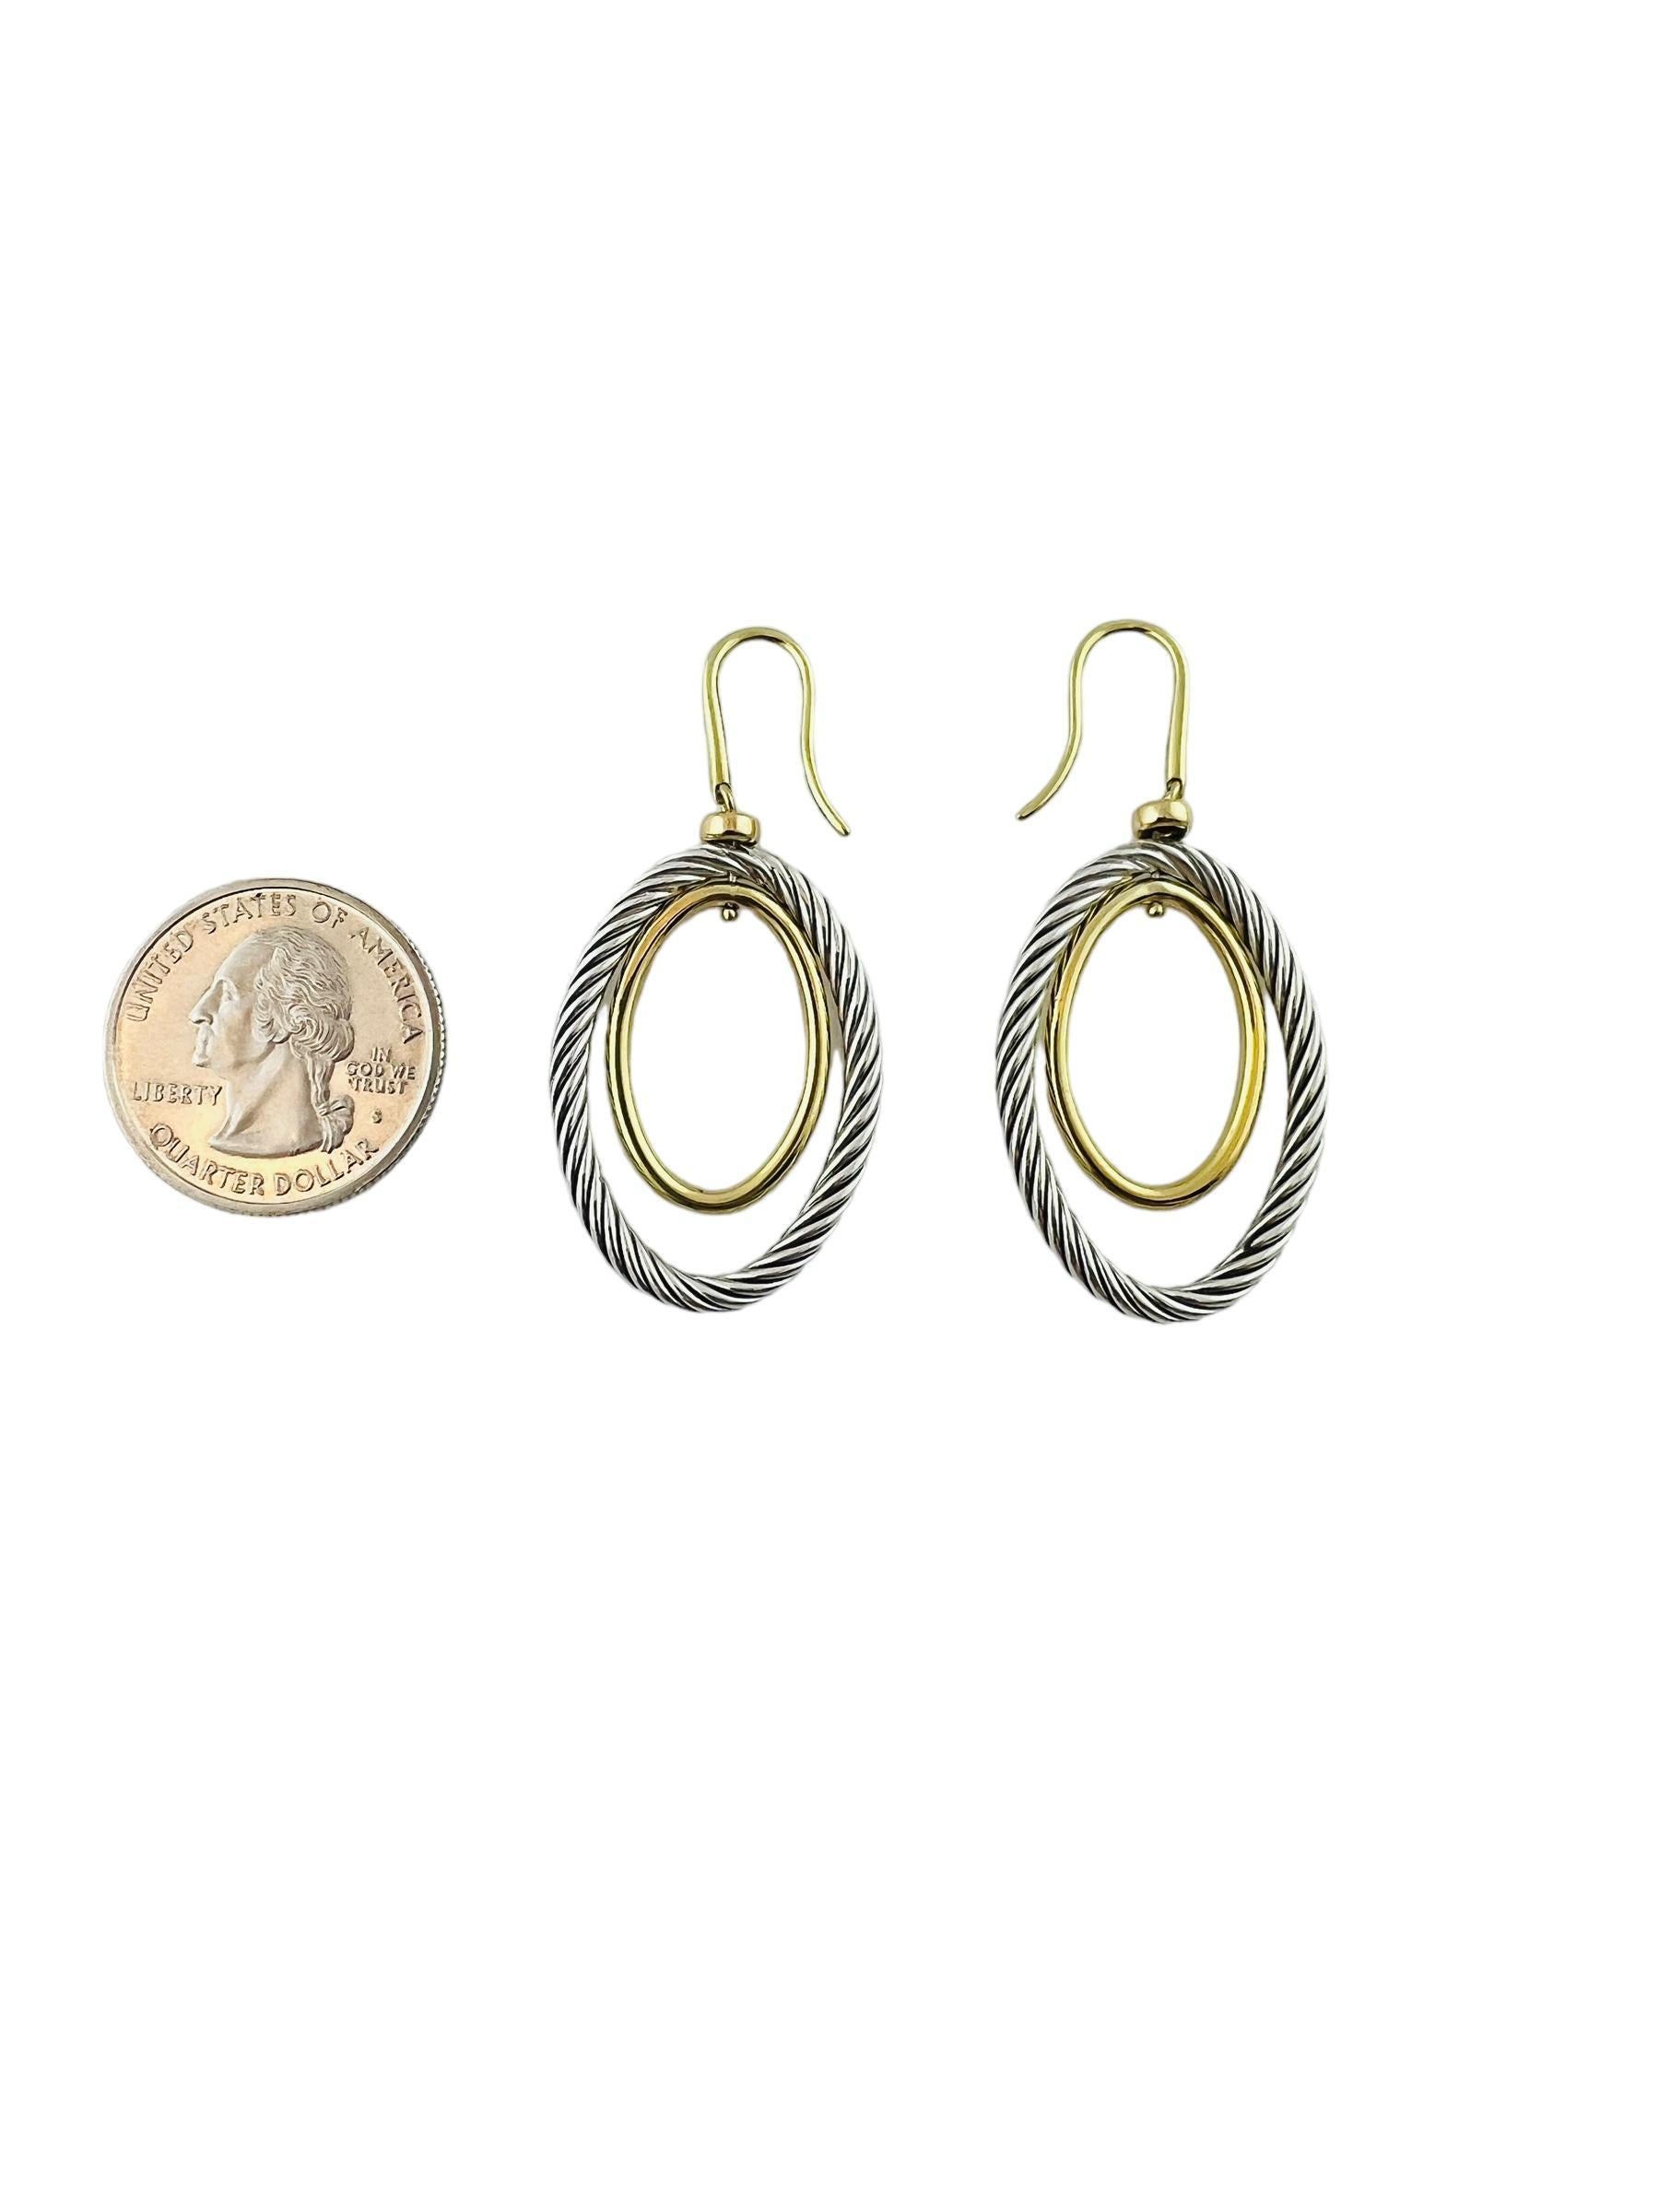 David Yurman Sterling Silver 18K Gold Plated Double Oval Dangle Earrings #15430 1